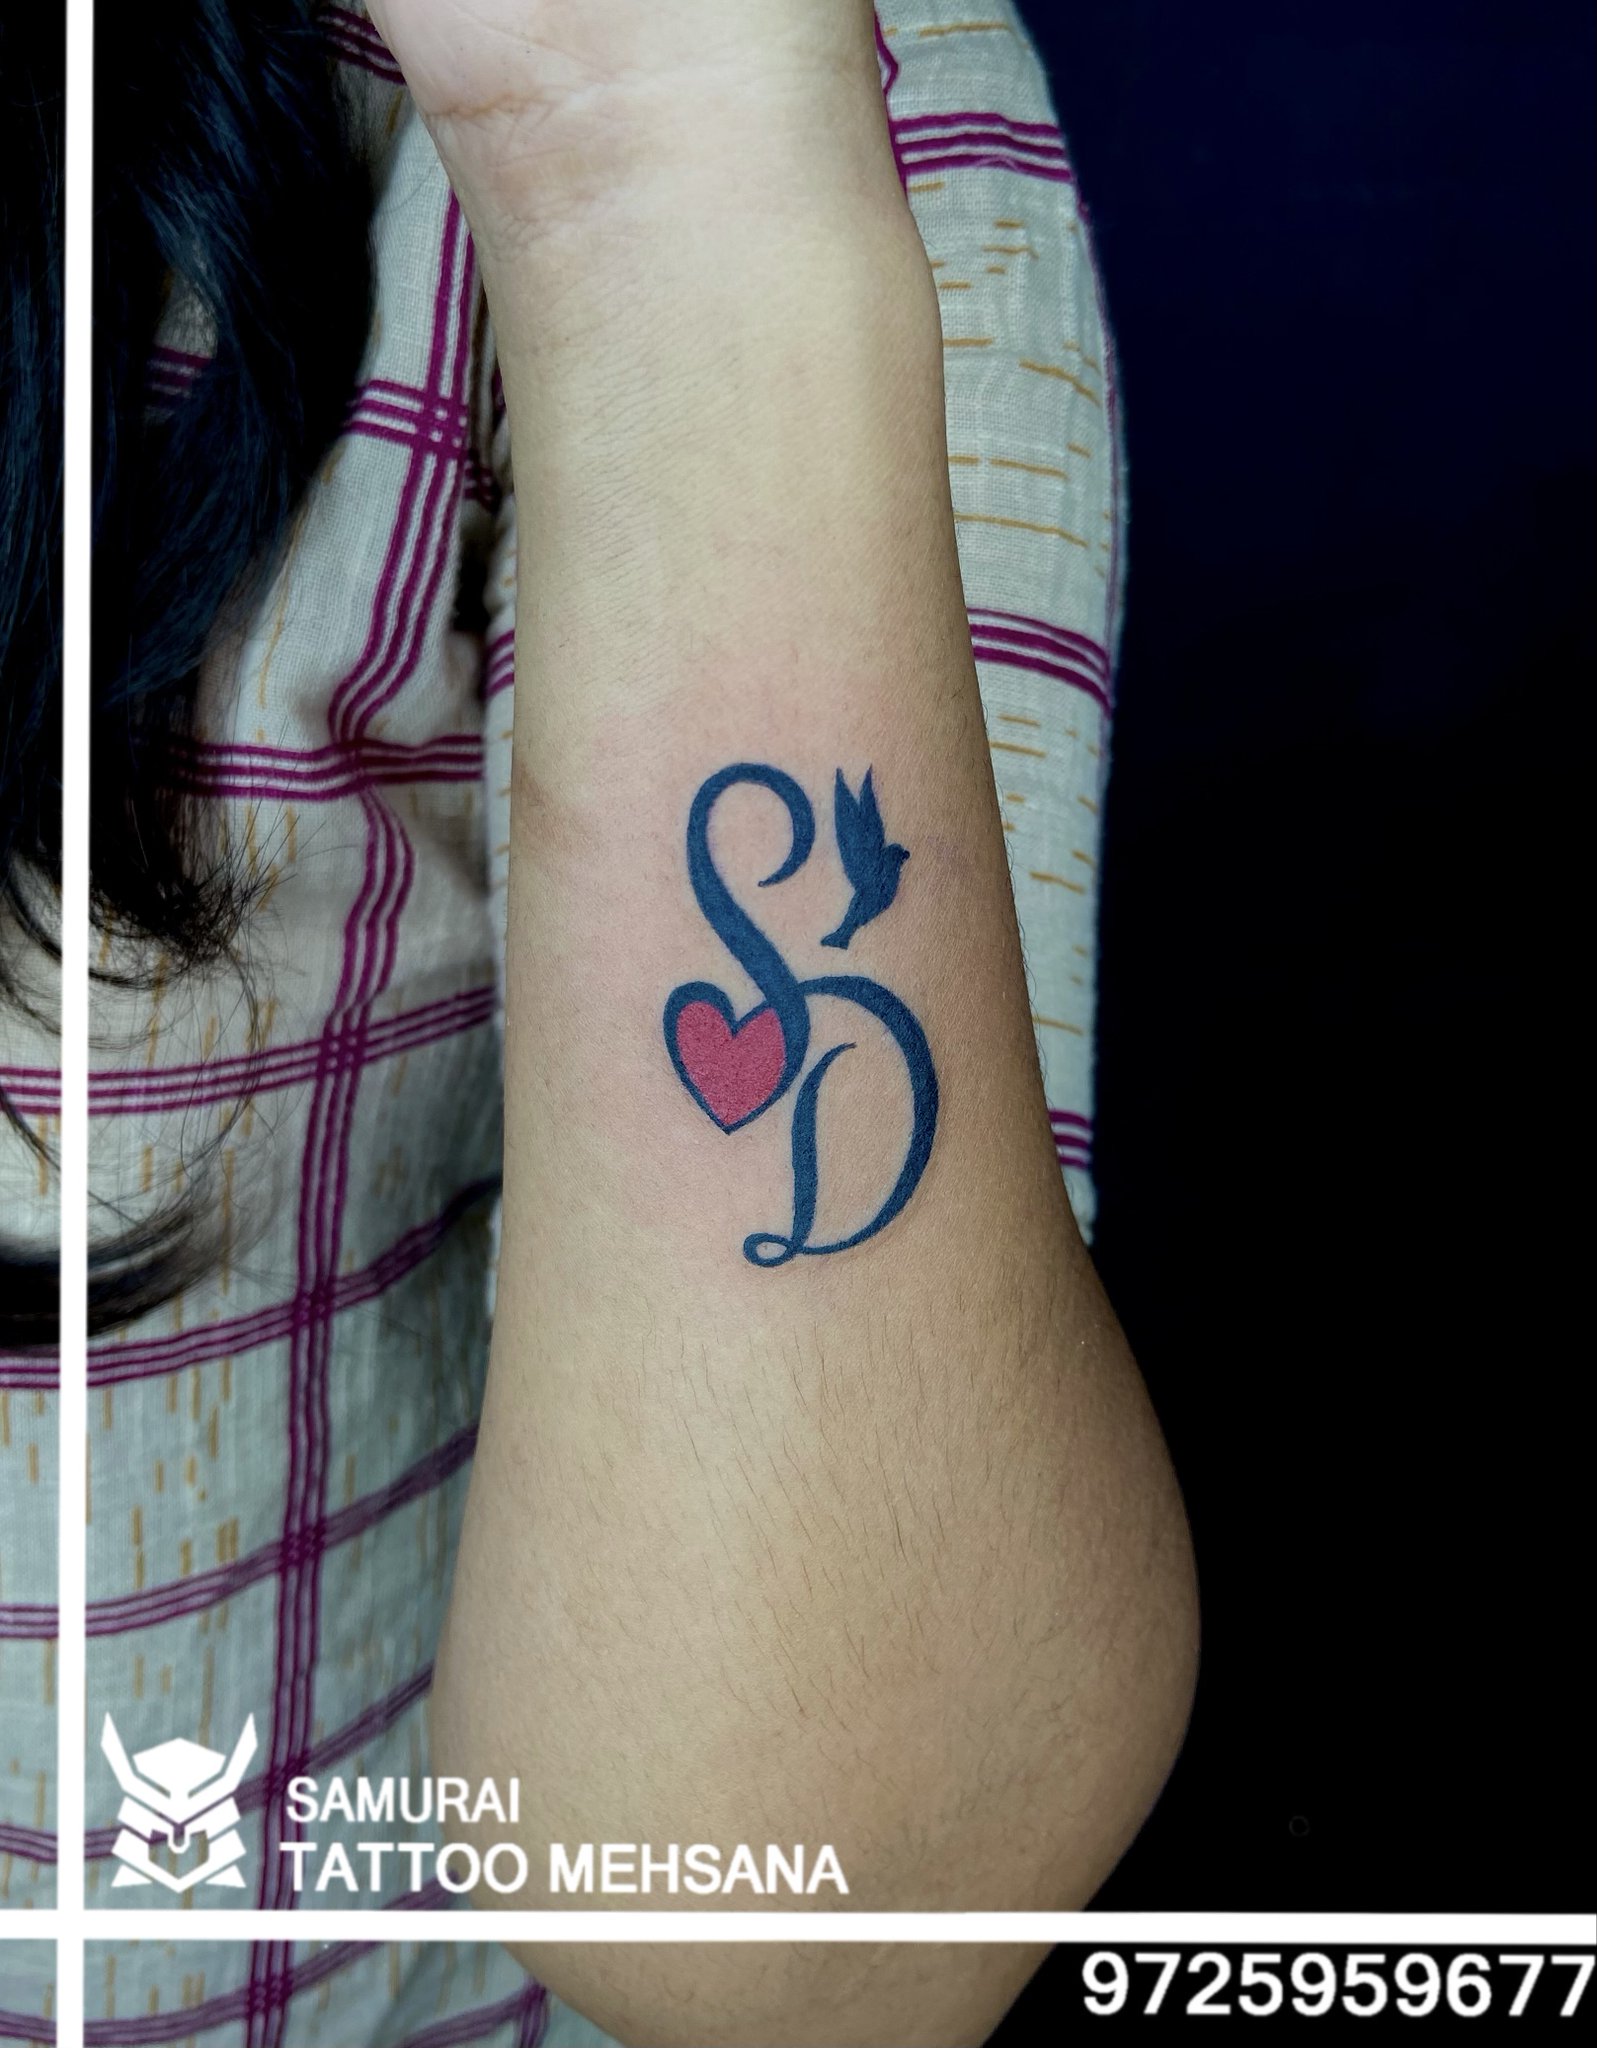 samurai tattoo mehsana on Twitter Sd logo sd tattoo sd font tattoo sd  font sdtattoos httpstcoLO2BlV7HvN  Twitter